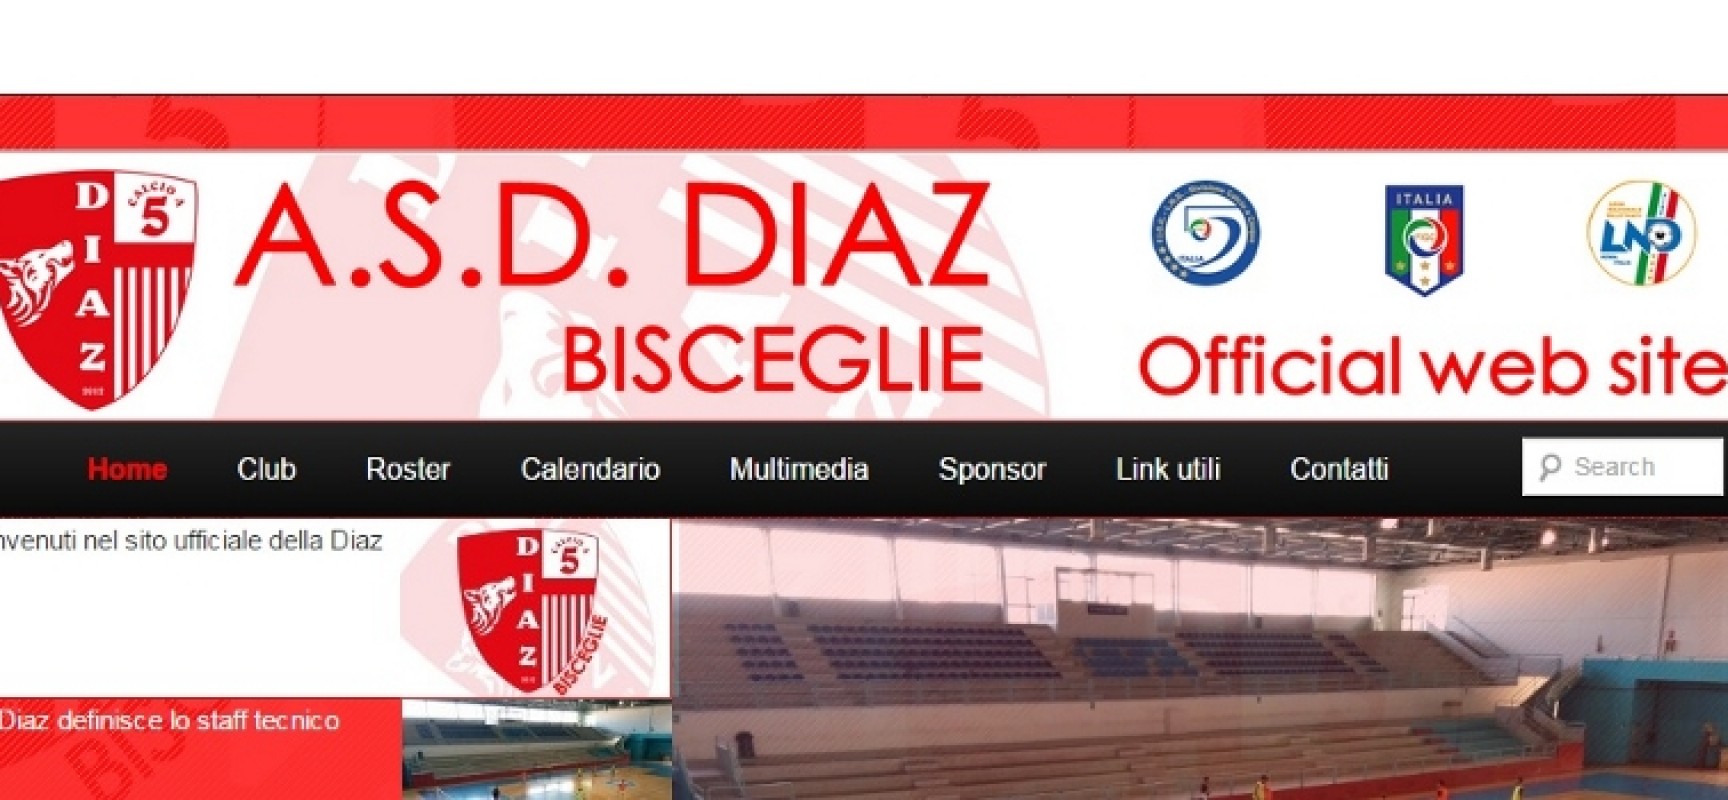 Online oggi il sito web della Diaz C5